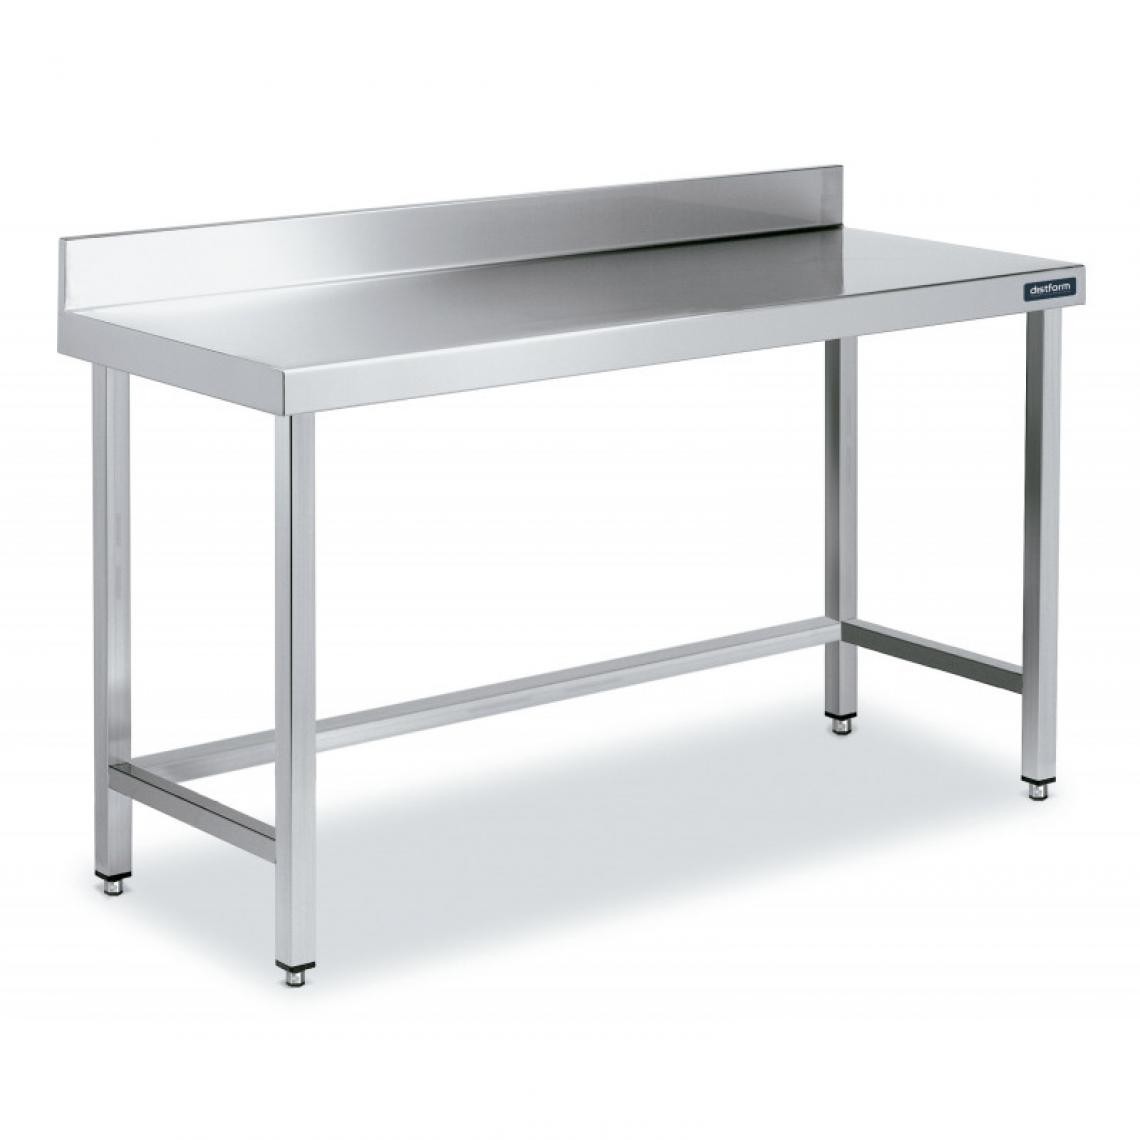 DISTFORM - Table Adossée en Inox avec Renforts Profondeur 600 mm - Distform - Acier inoxydable700x600 - Tables à manger